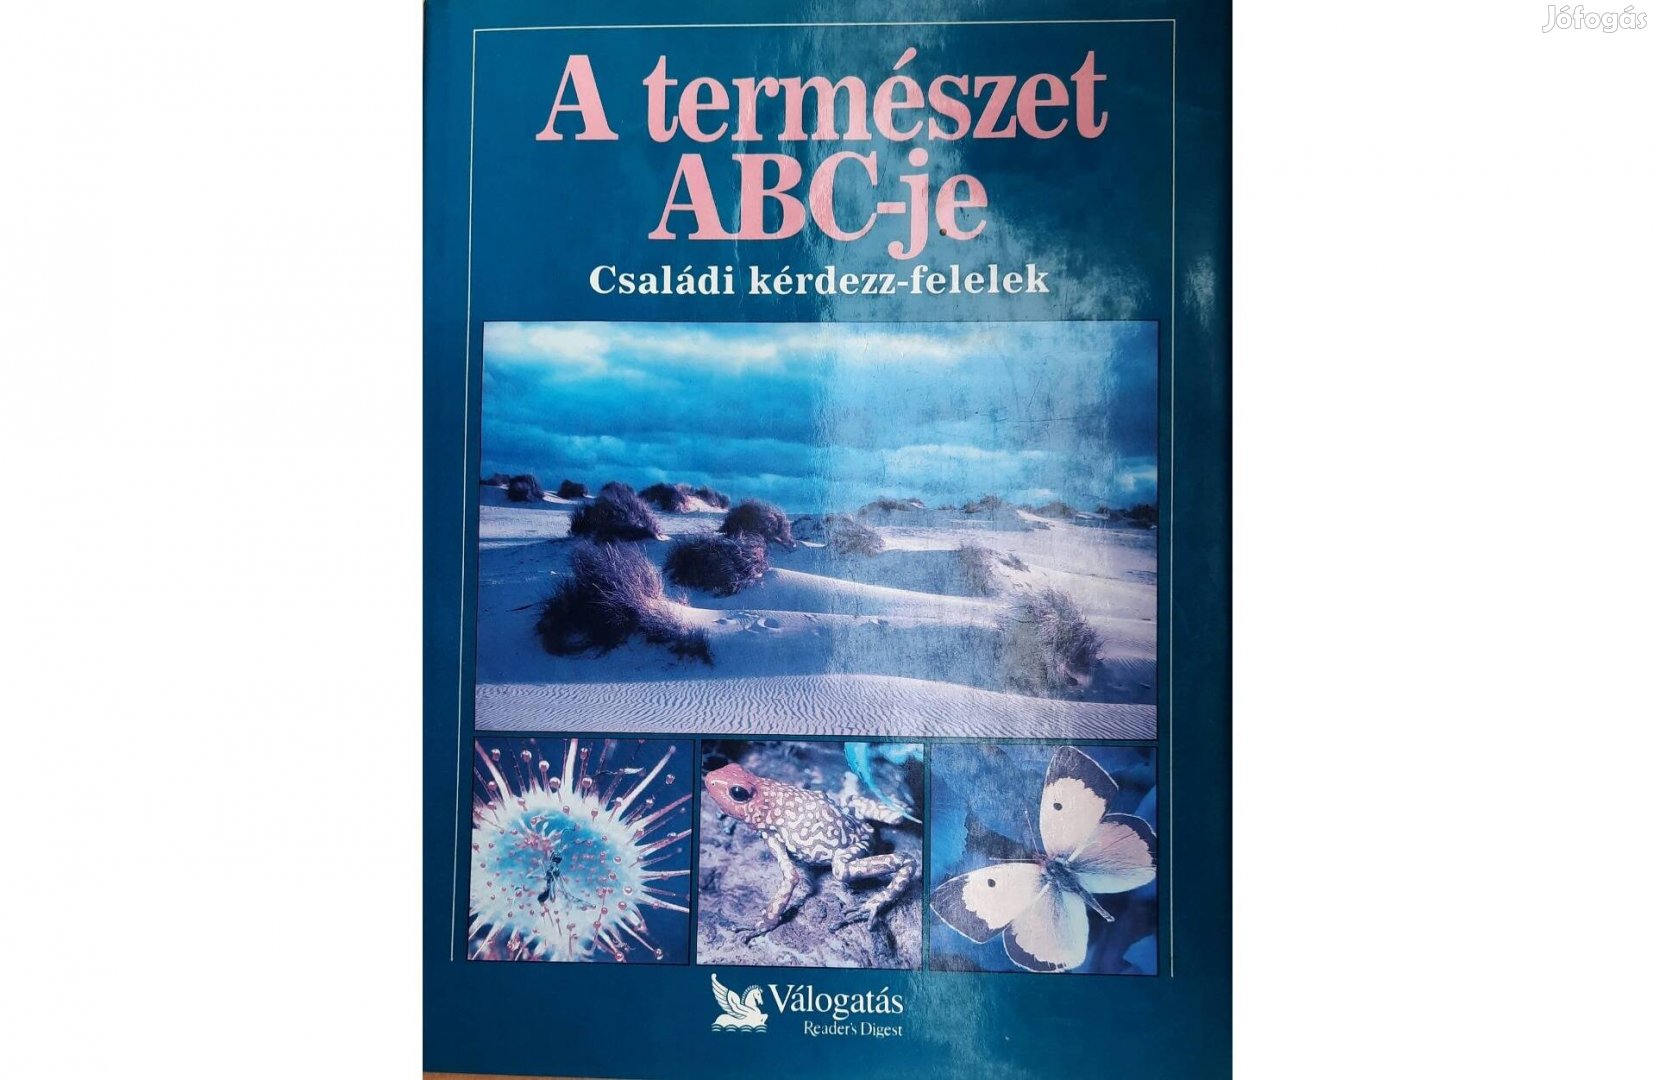 A természet ABC-je című könyv eladó